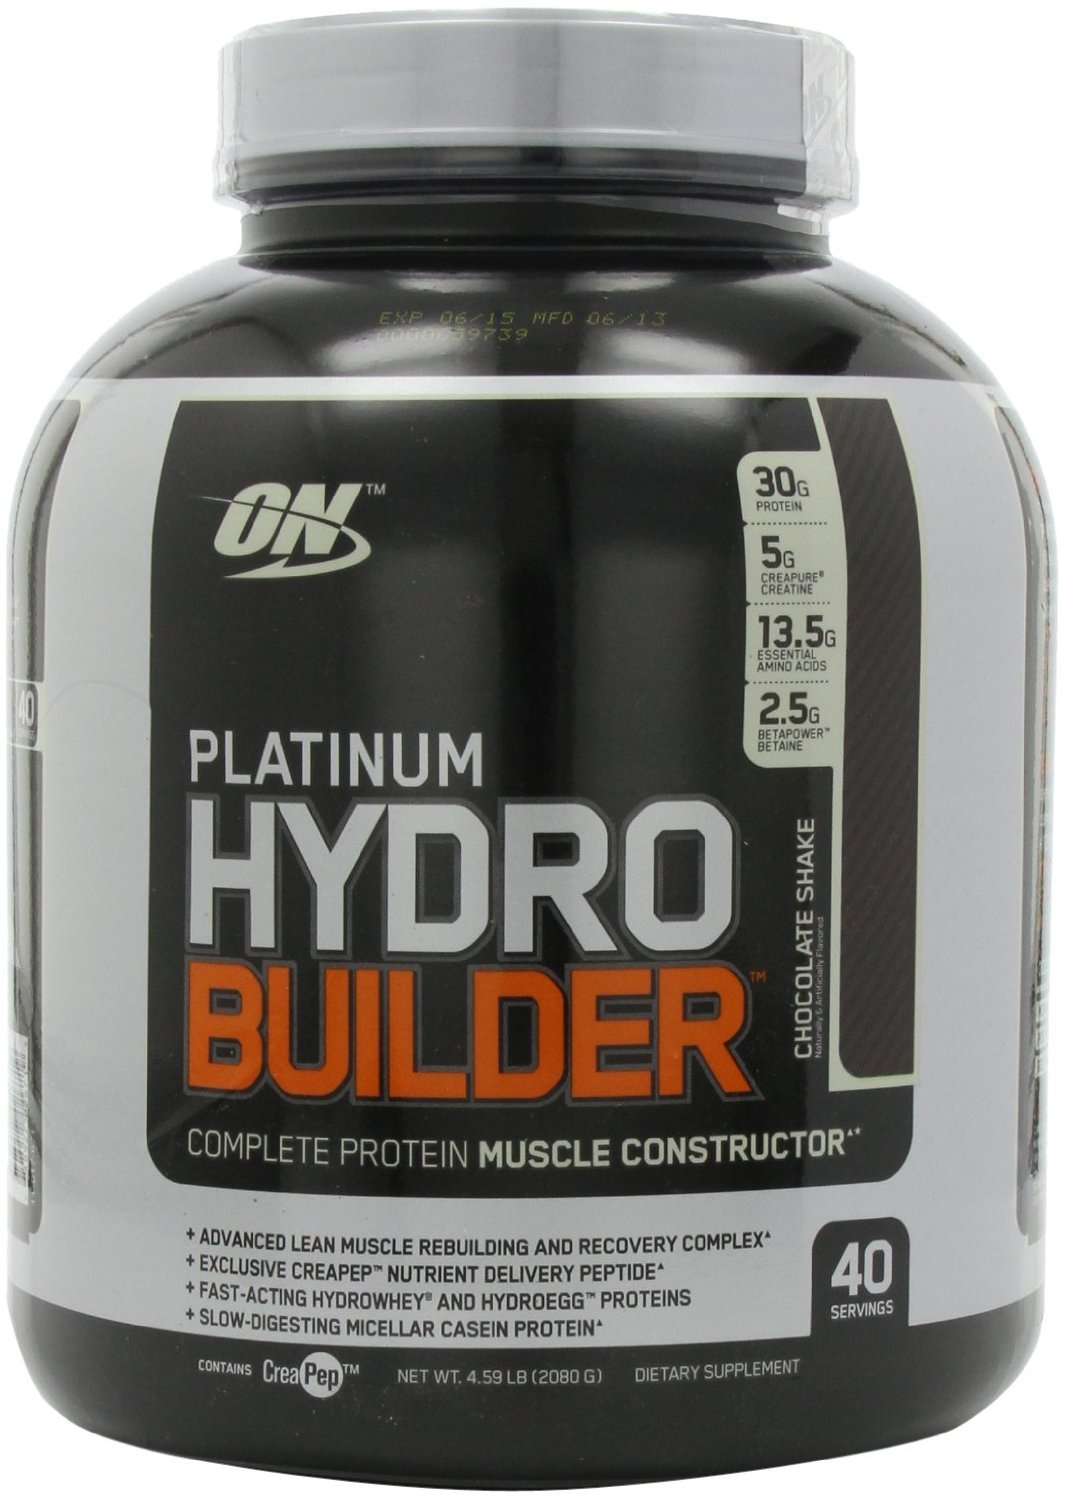 Platinum Hydro Builder, 2080 g, Optimum Nutrition. Protein Blend. 